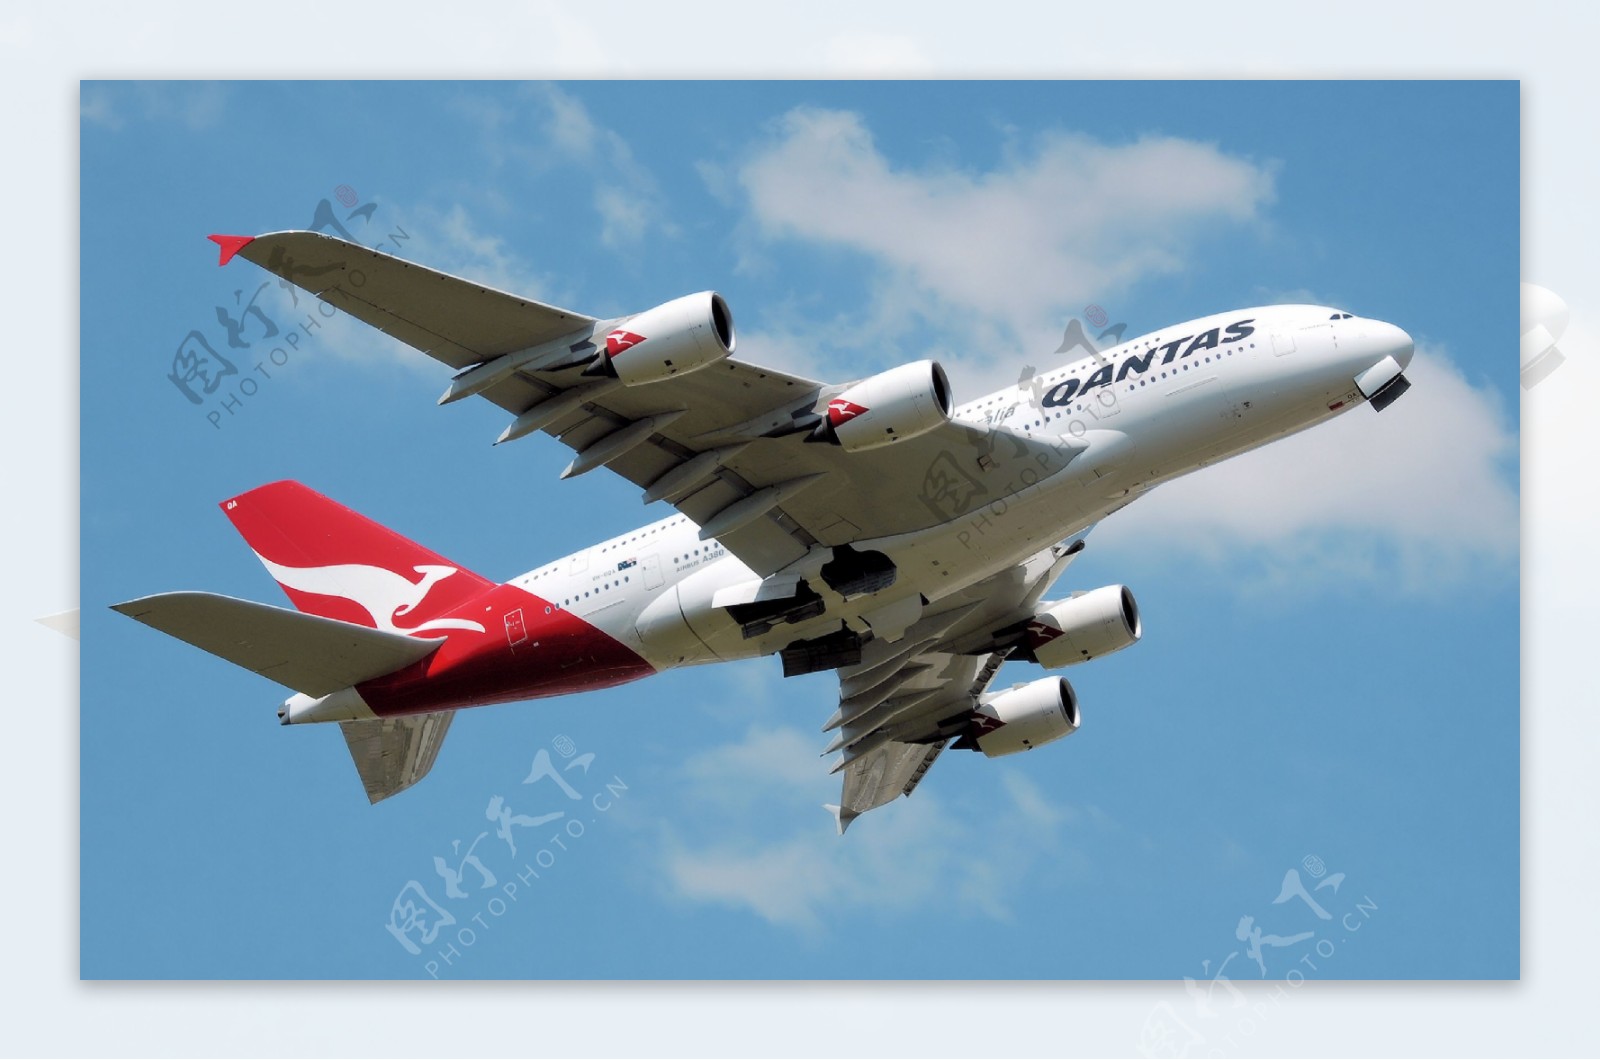 空中巨无霸A380客机图片